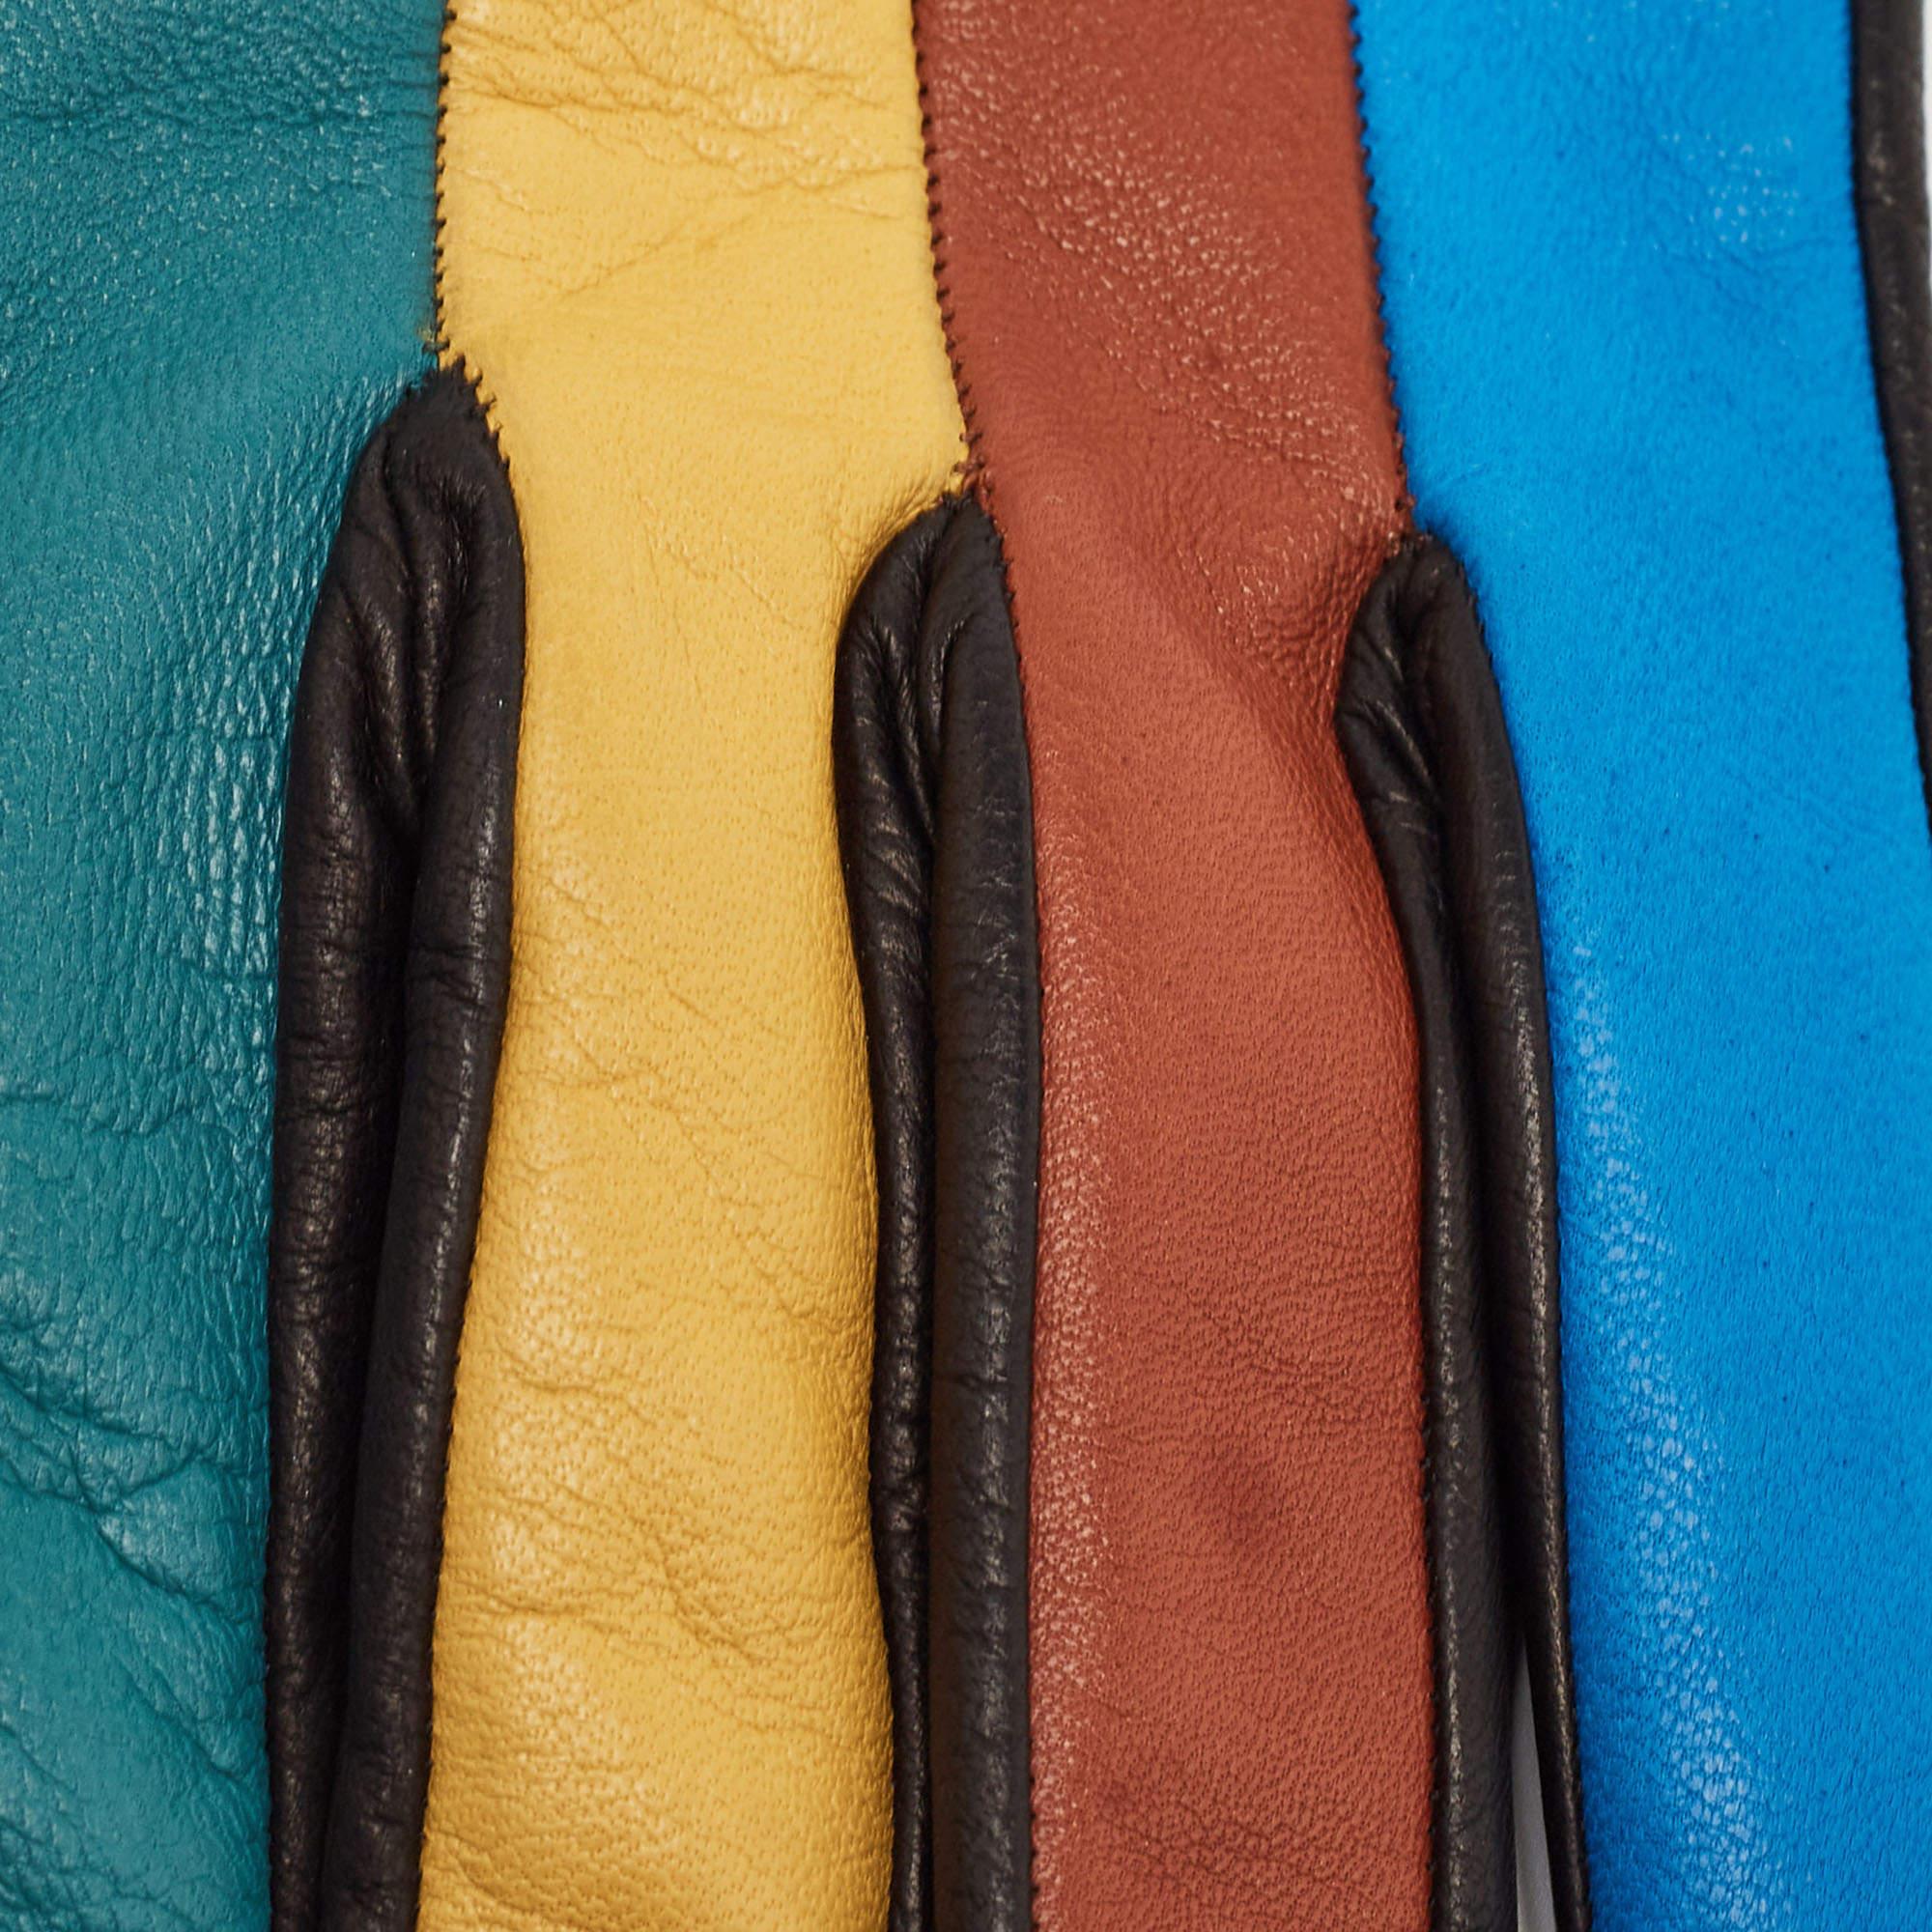 Confectionnés en cuir souple, les gants Missoni sont une fusion de luxe et de style. Les teintes vives convergent en blocs précis, ajoutant une touche de couleur aux ensembles d'hiver. Avec une coupe ajustée et une fabrication exquise, ils allient